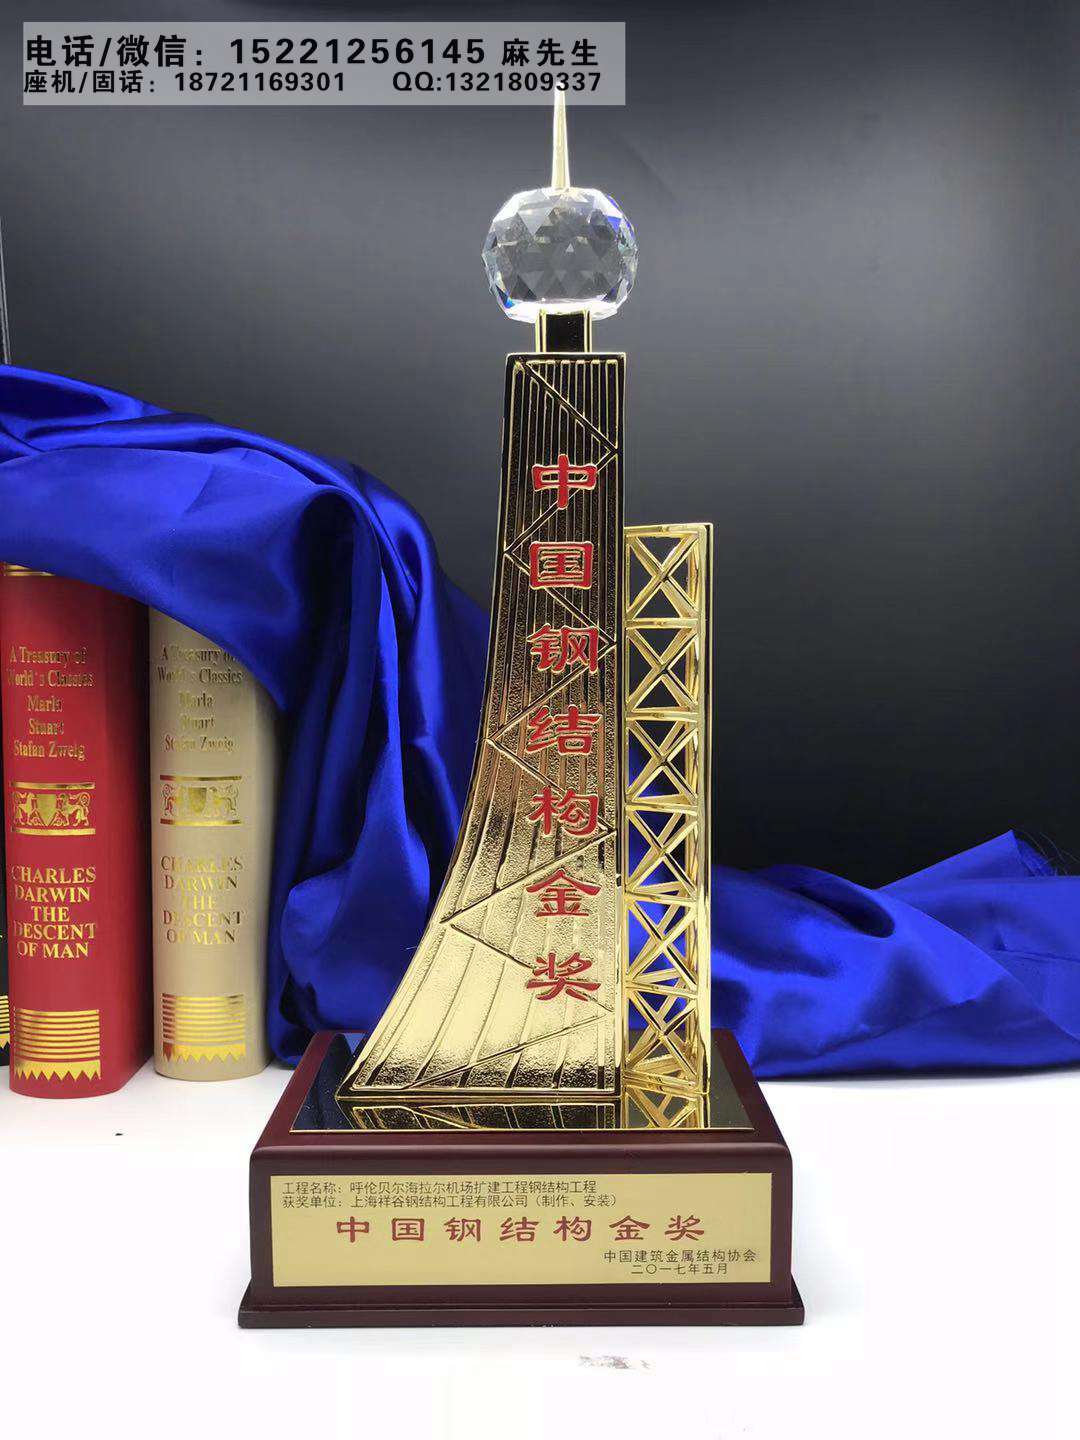 中国钢结构金奖奖杯供应单位、企业行业年会奖杯、金属材质奖杯